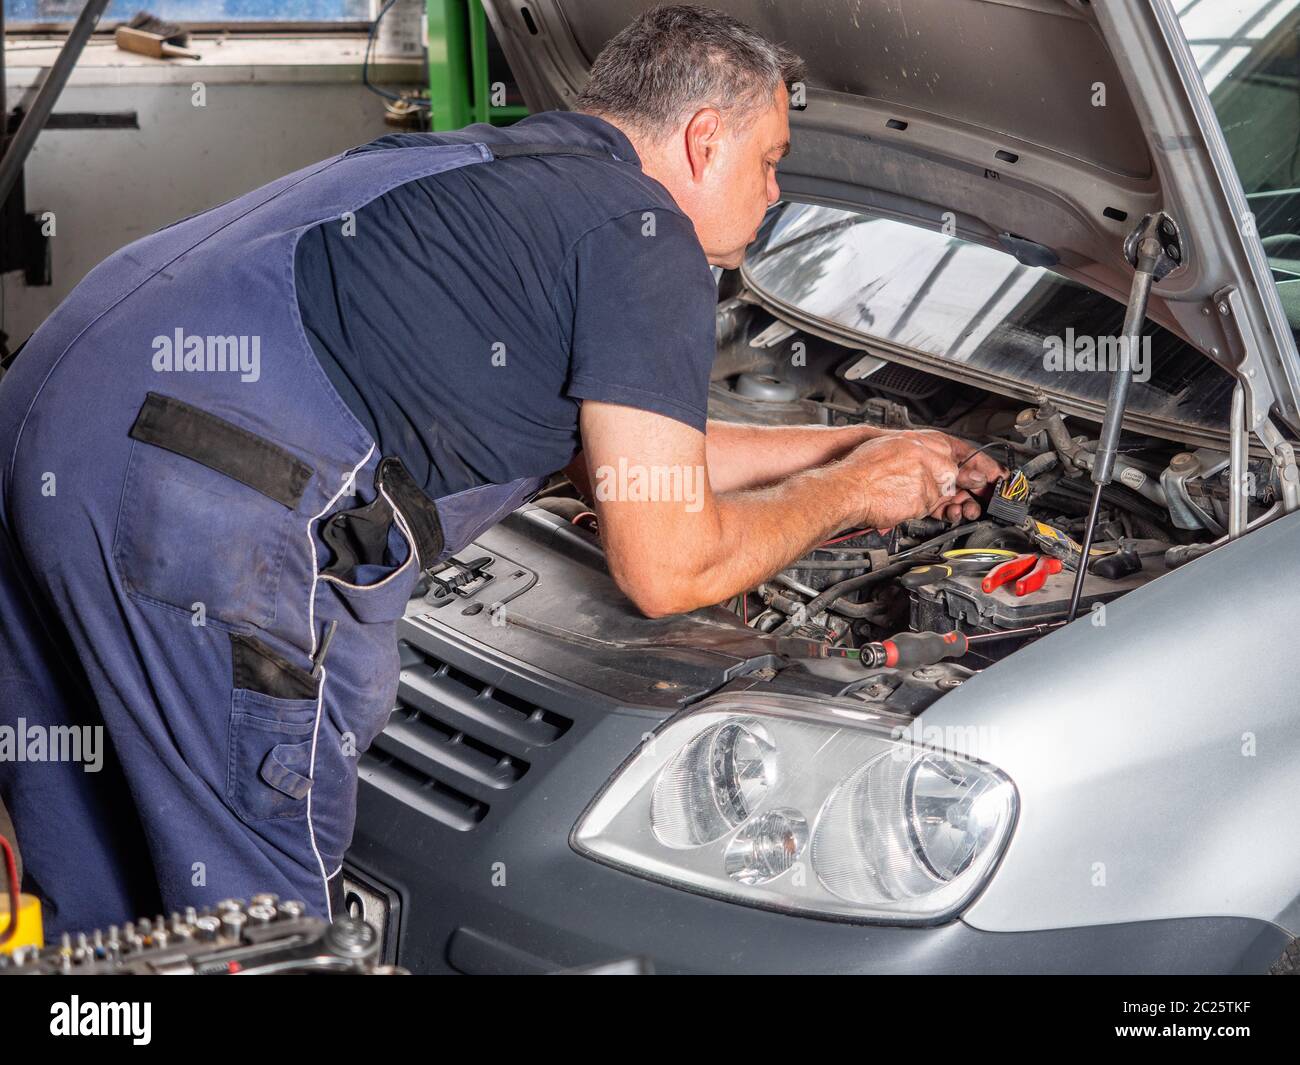 Auto mechanic repairs car 3 Stock Photo